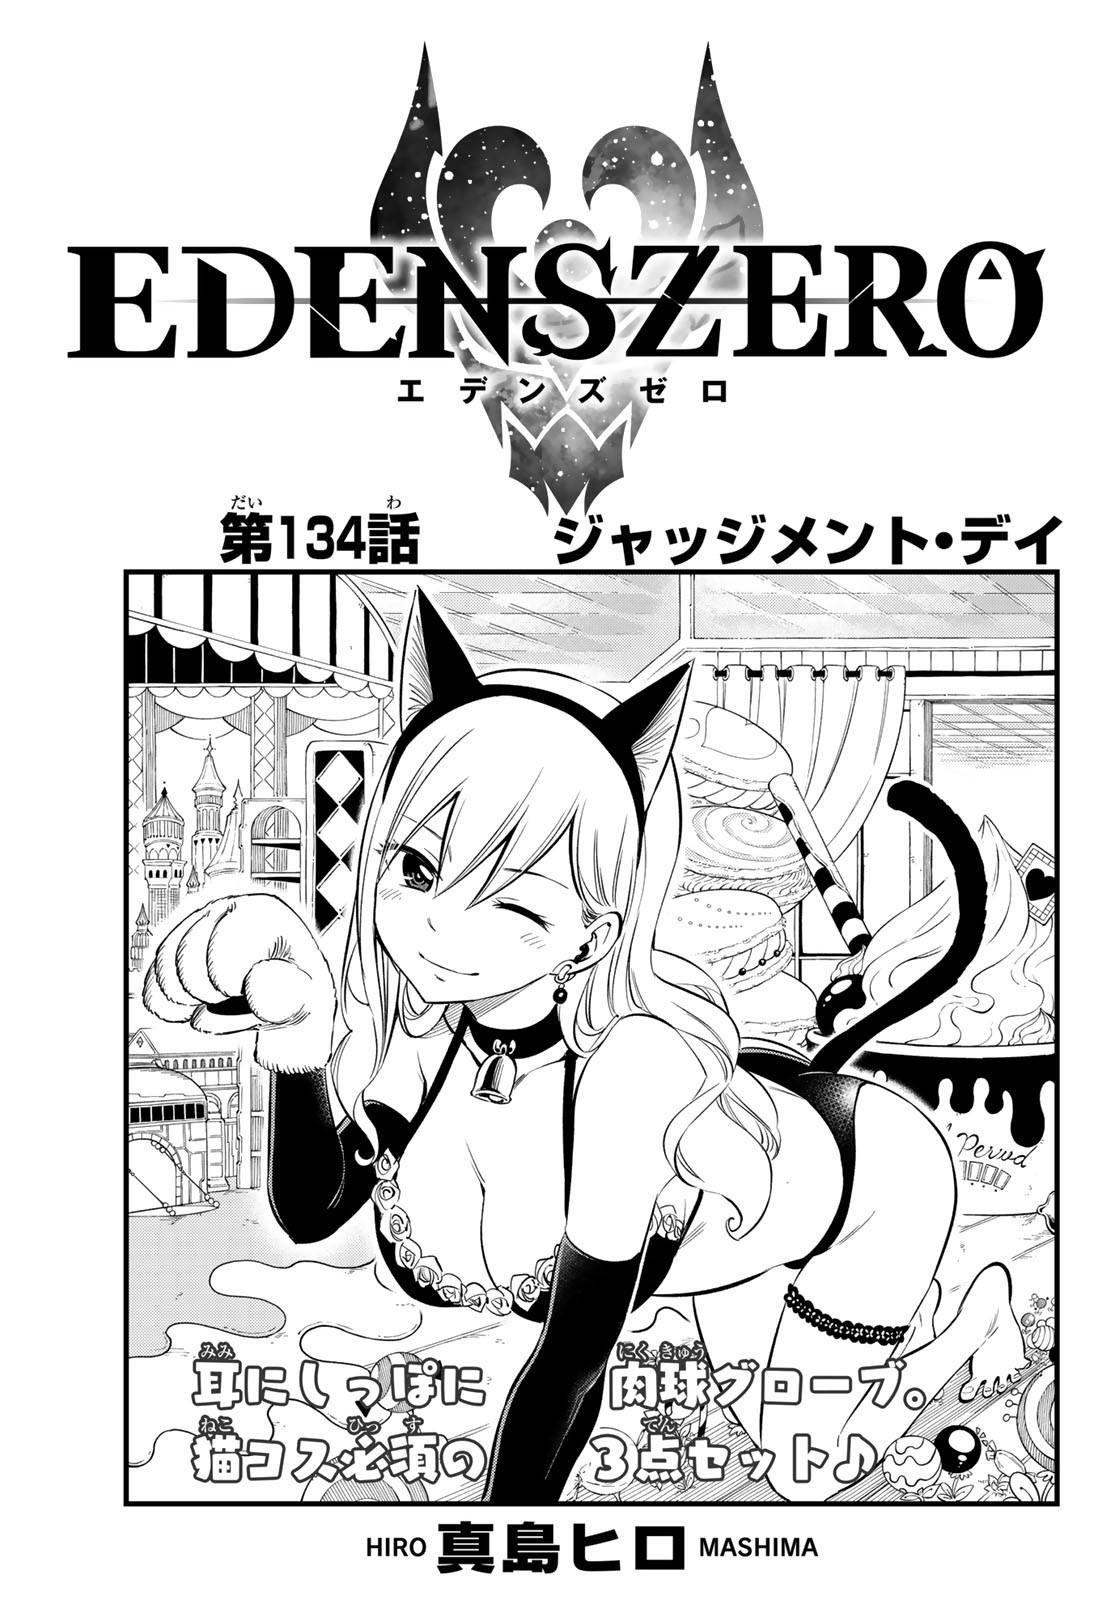 Edens Zero Volume 01 – The Fourth Place